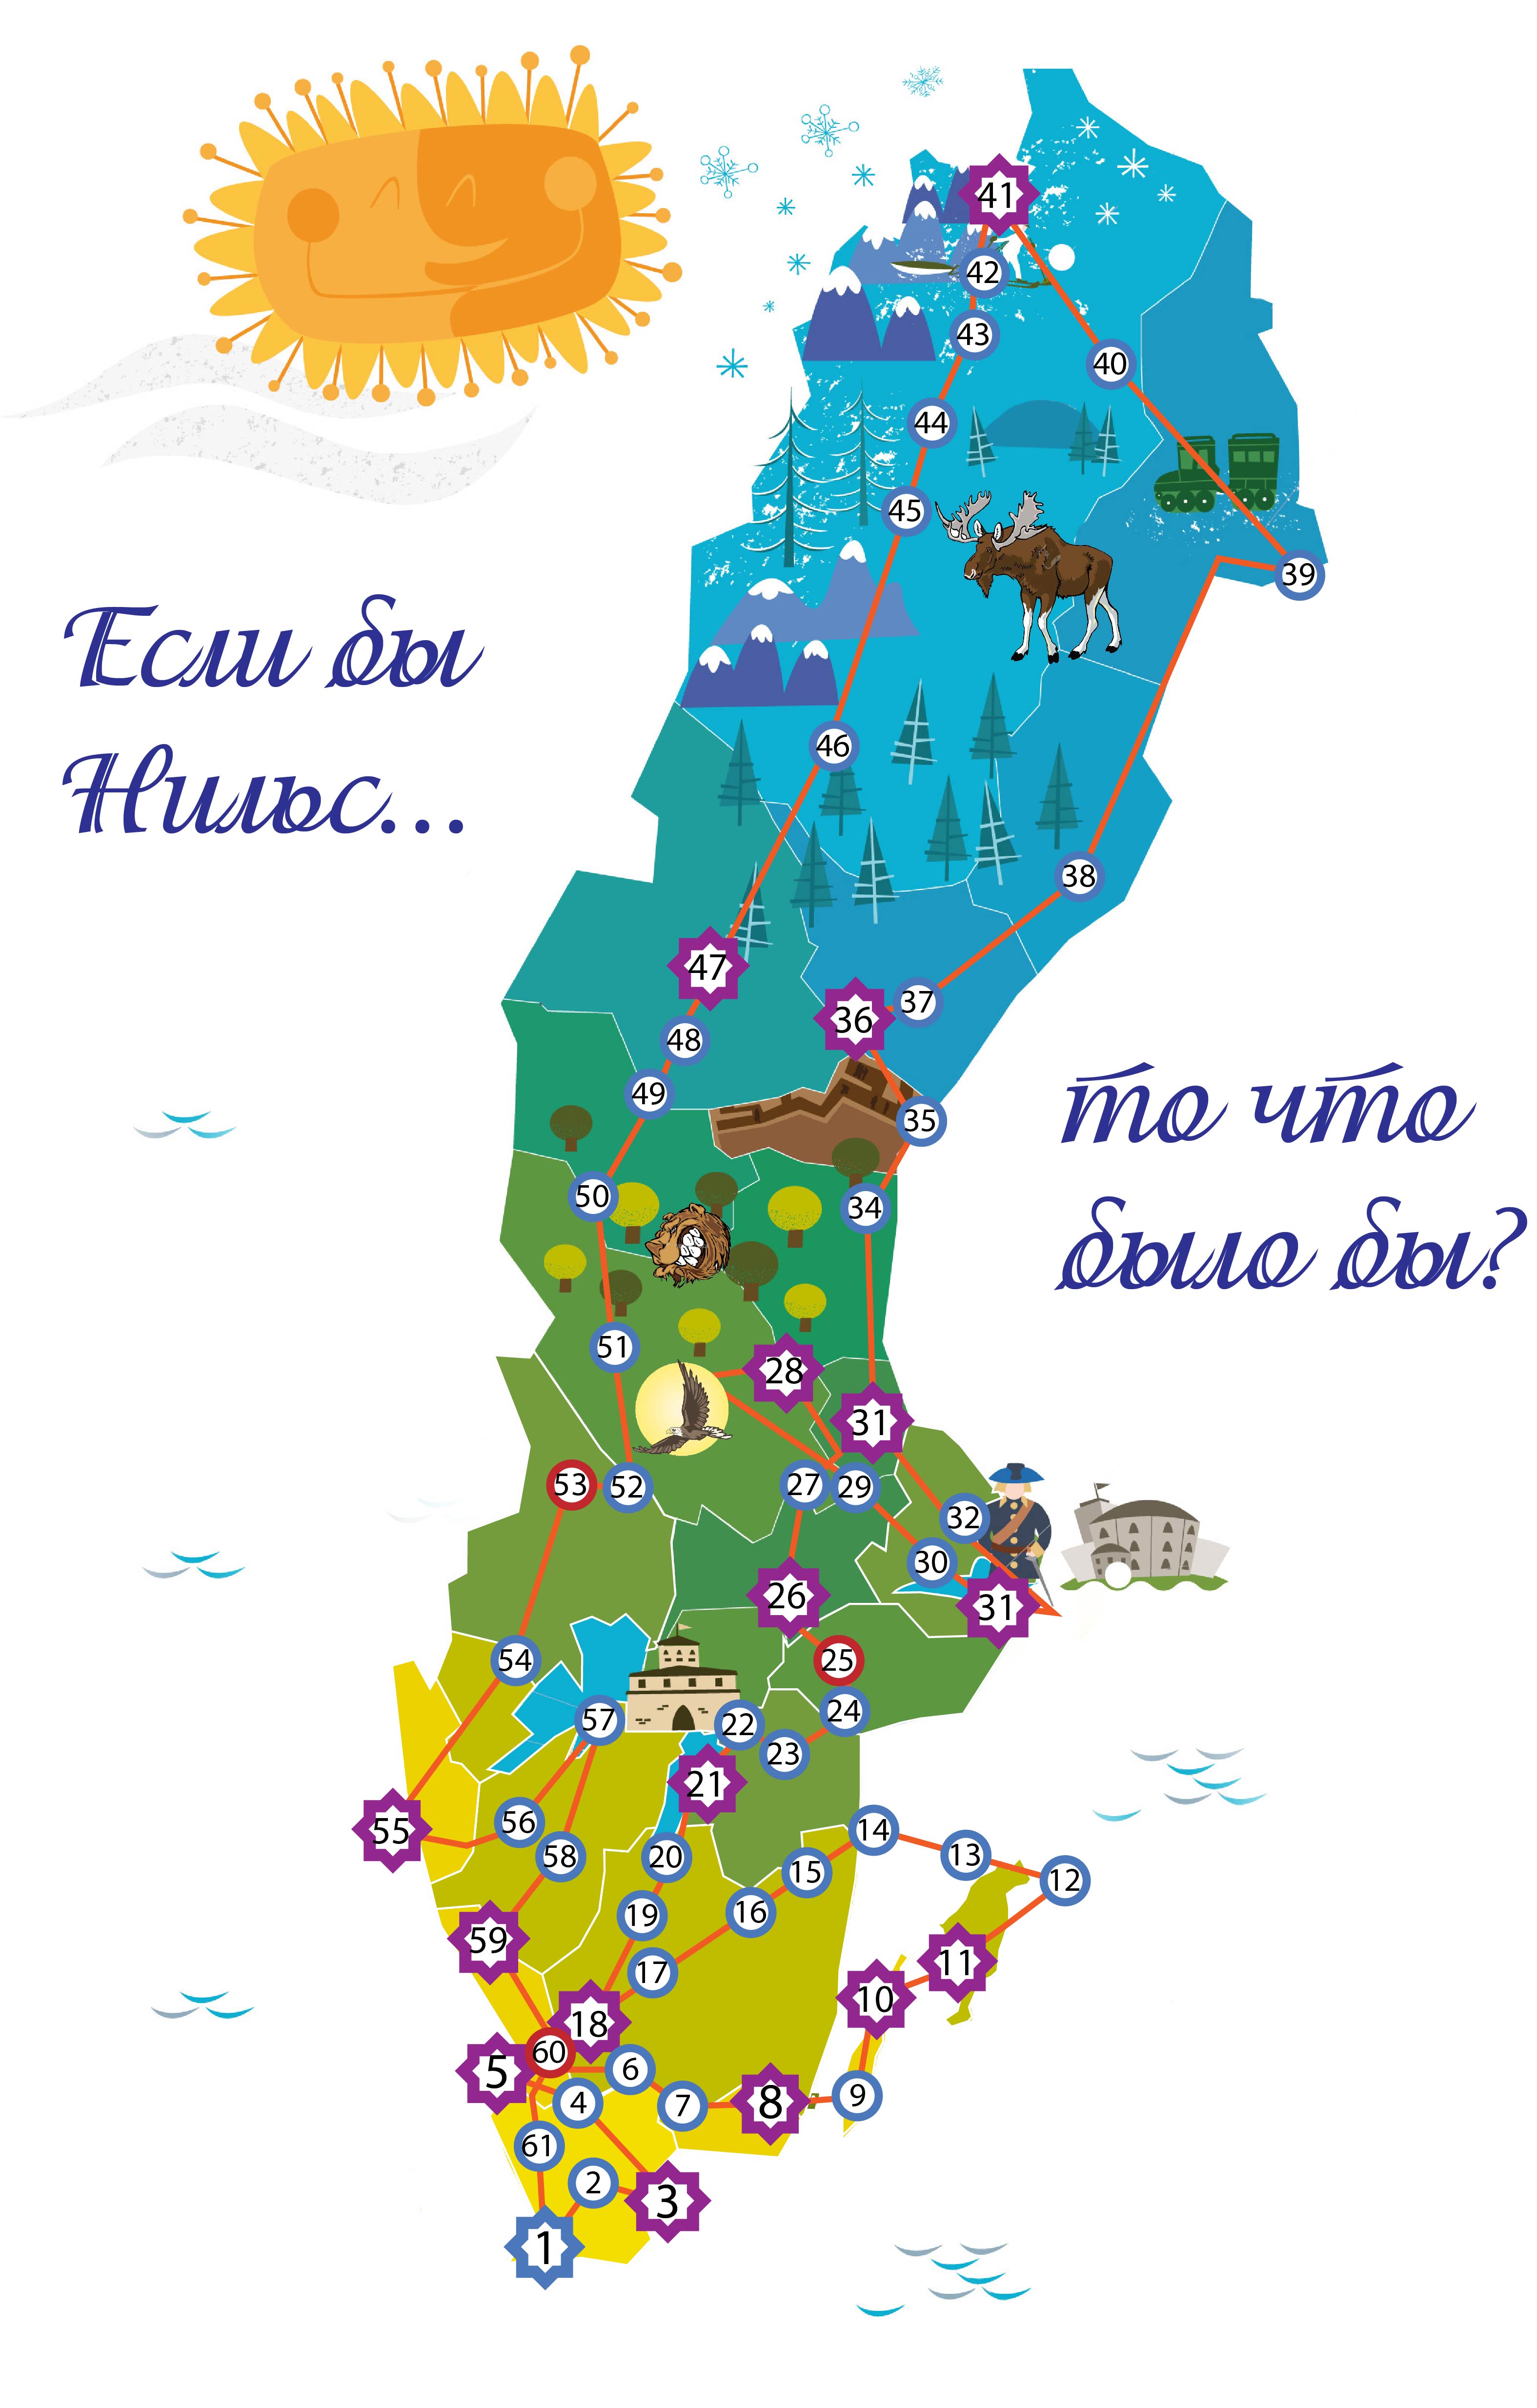 План путешествия нильса с дикими гусями. Карта Швеции путешествие Нильса. Карта путешествия Нильса с дикими гусями. Путешествие Нильса с дикими гусями карта путешествий. Карта Швеции путешествия Нильса с дикими гусями.